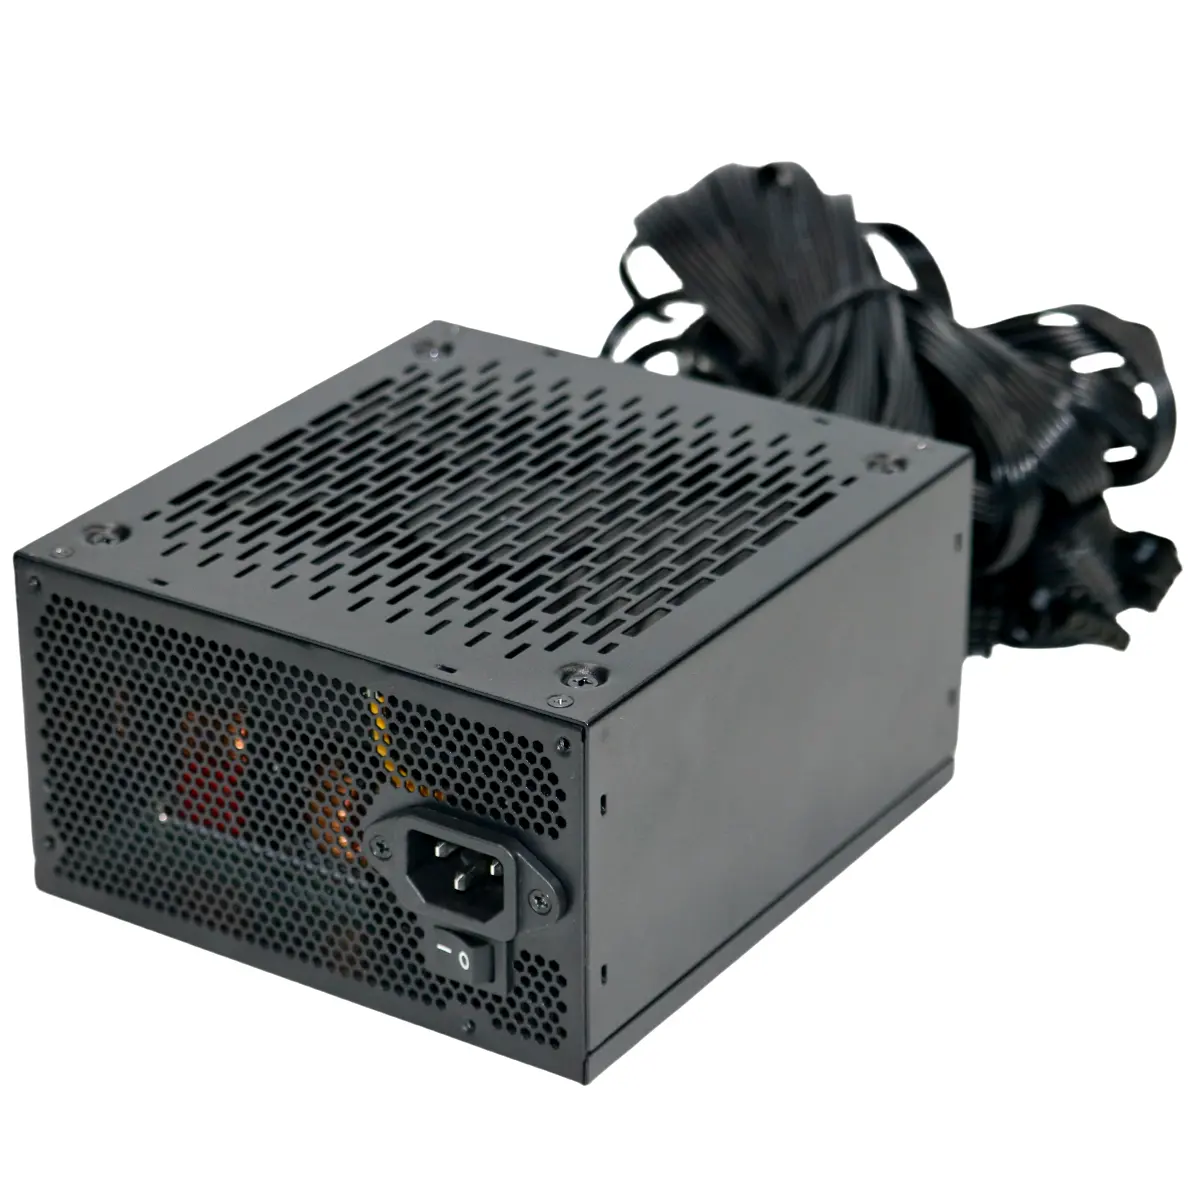 OEM-Anpassung 1200 W PC-Schalterung Gleichstromversorgung für 20 + 4 Pin-Schnittstelle Desktop Server-Stromversorgung